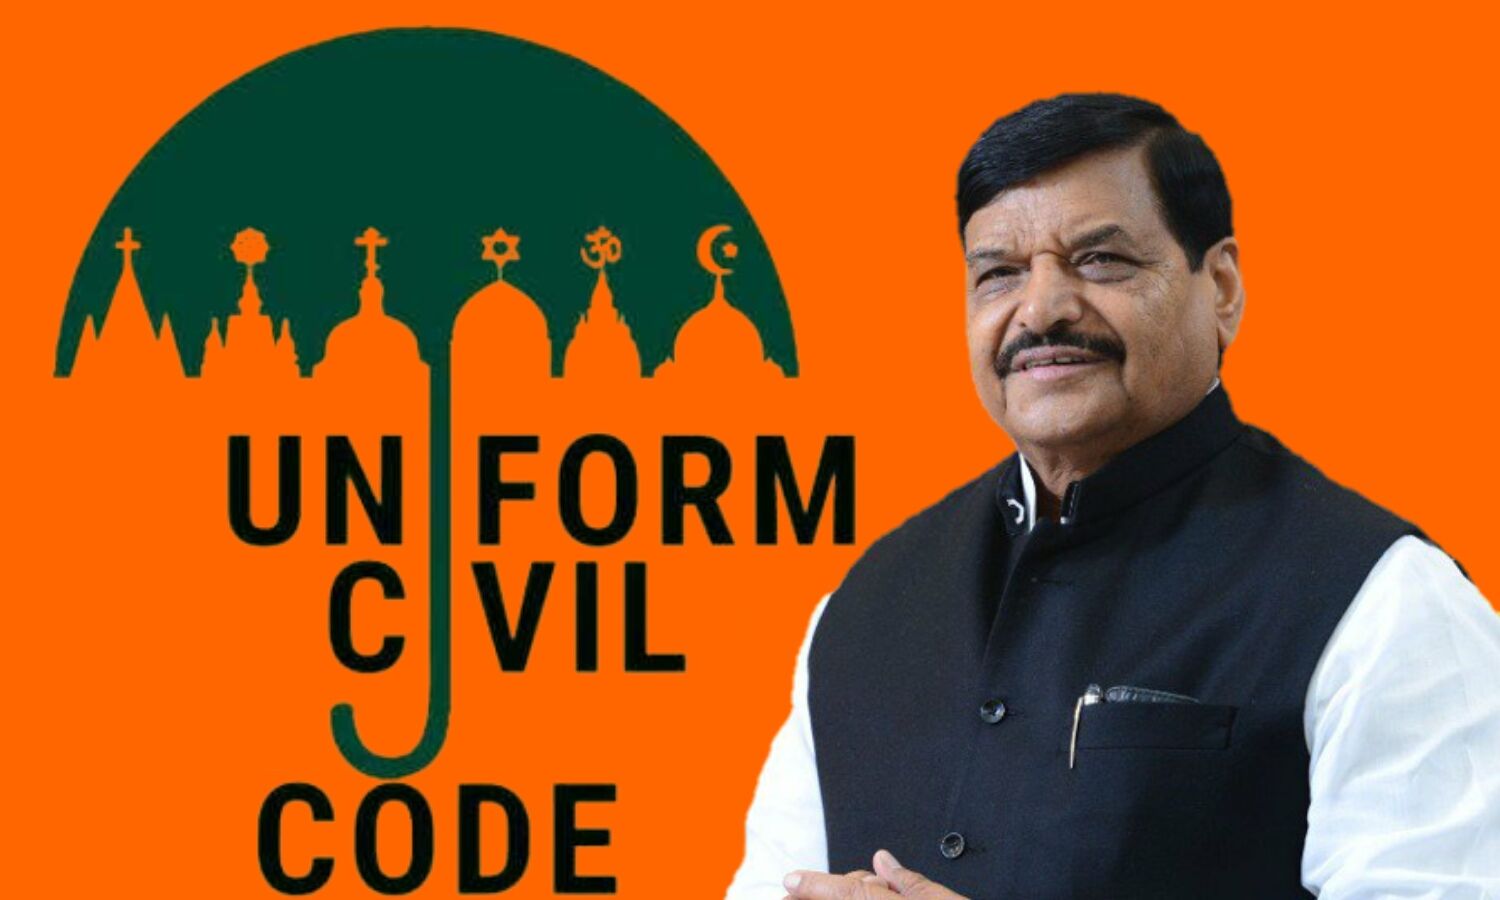 Uniform Civil Code : शिवपाल यादव ने की समान नागरिक संहिता की पैरवी, बोले अब सही समय आ गया